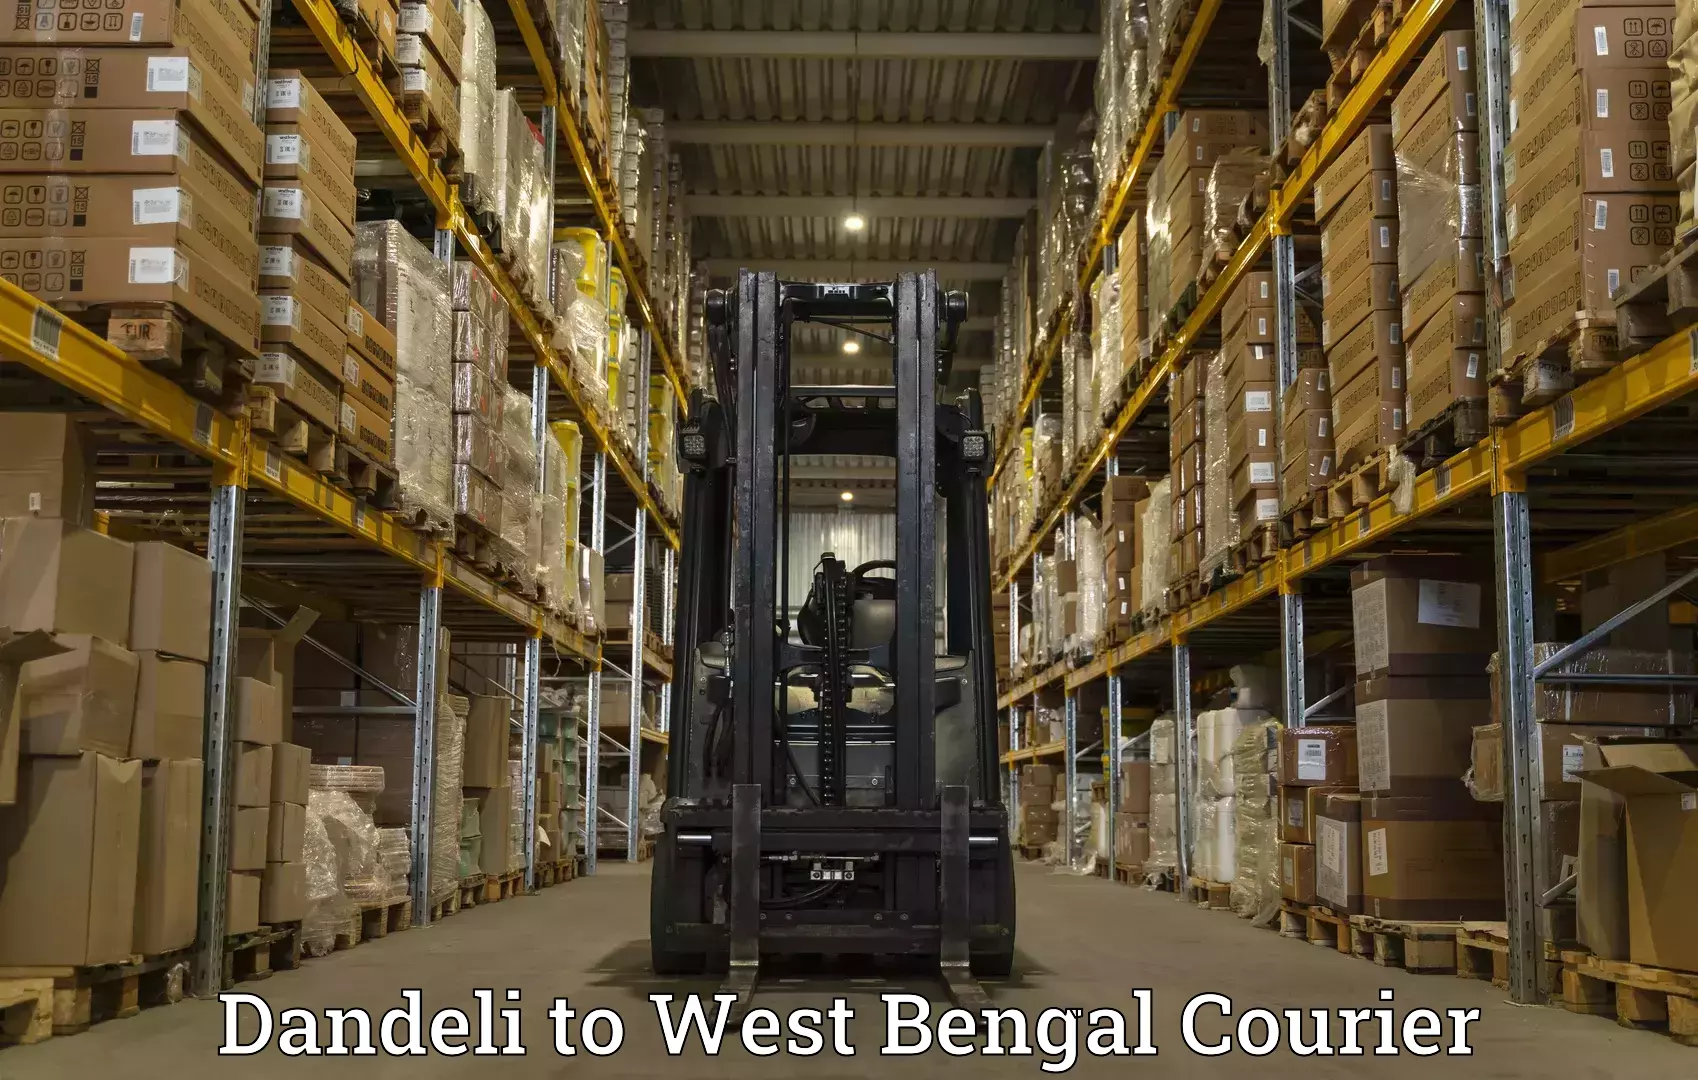 Cargo courier service Dandeli to Kolkata Port